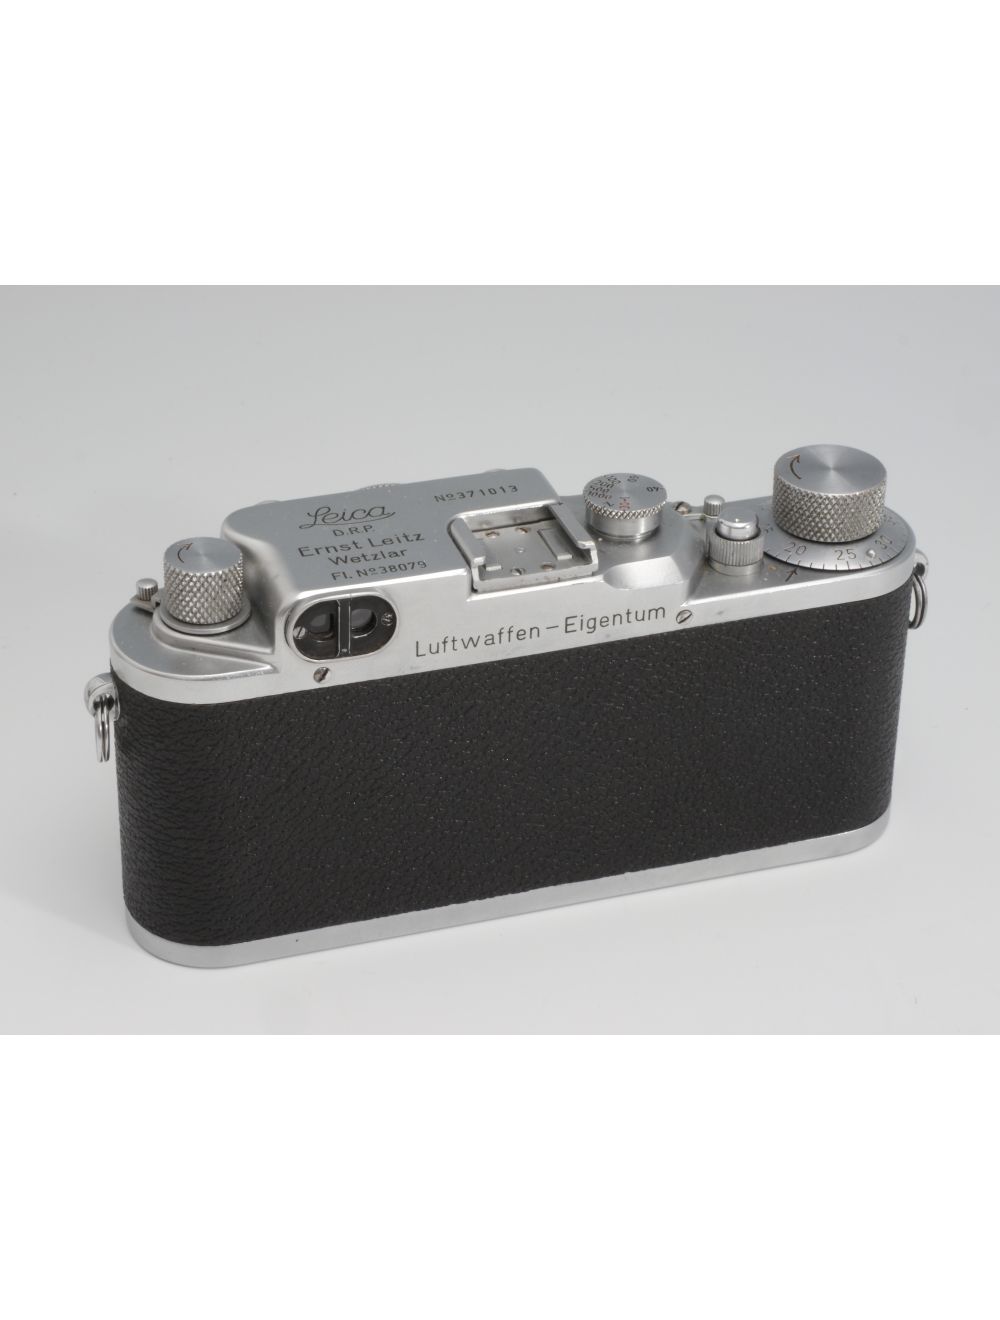 Leitz / Leica IIIc chrome Luftwaffen-Eigentum w. matching Elmar 